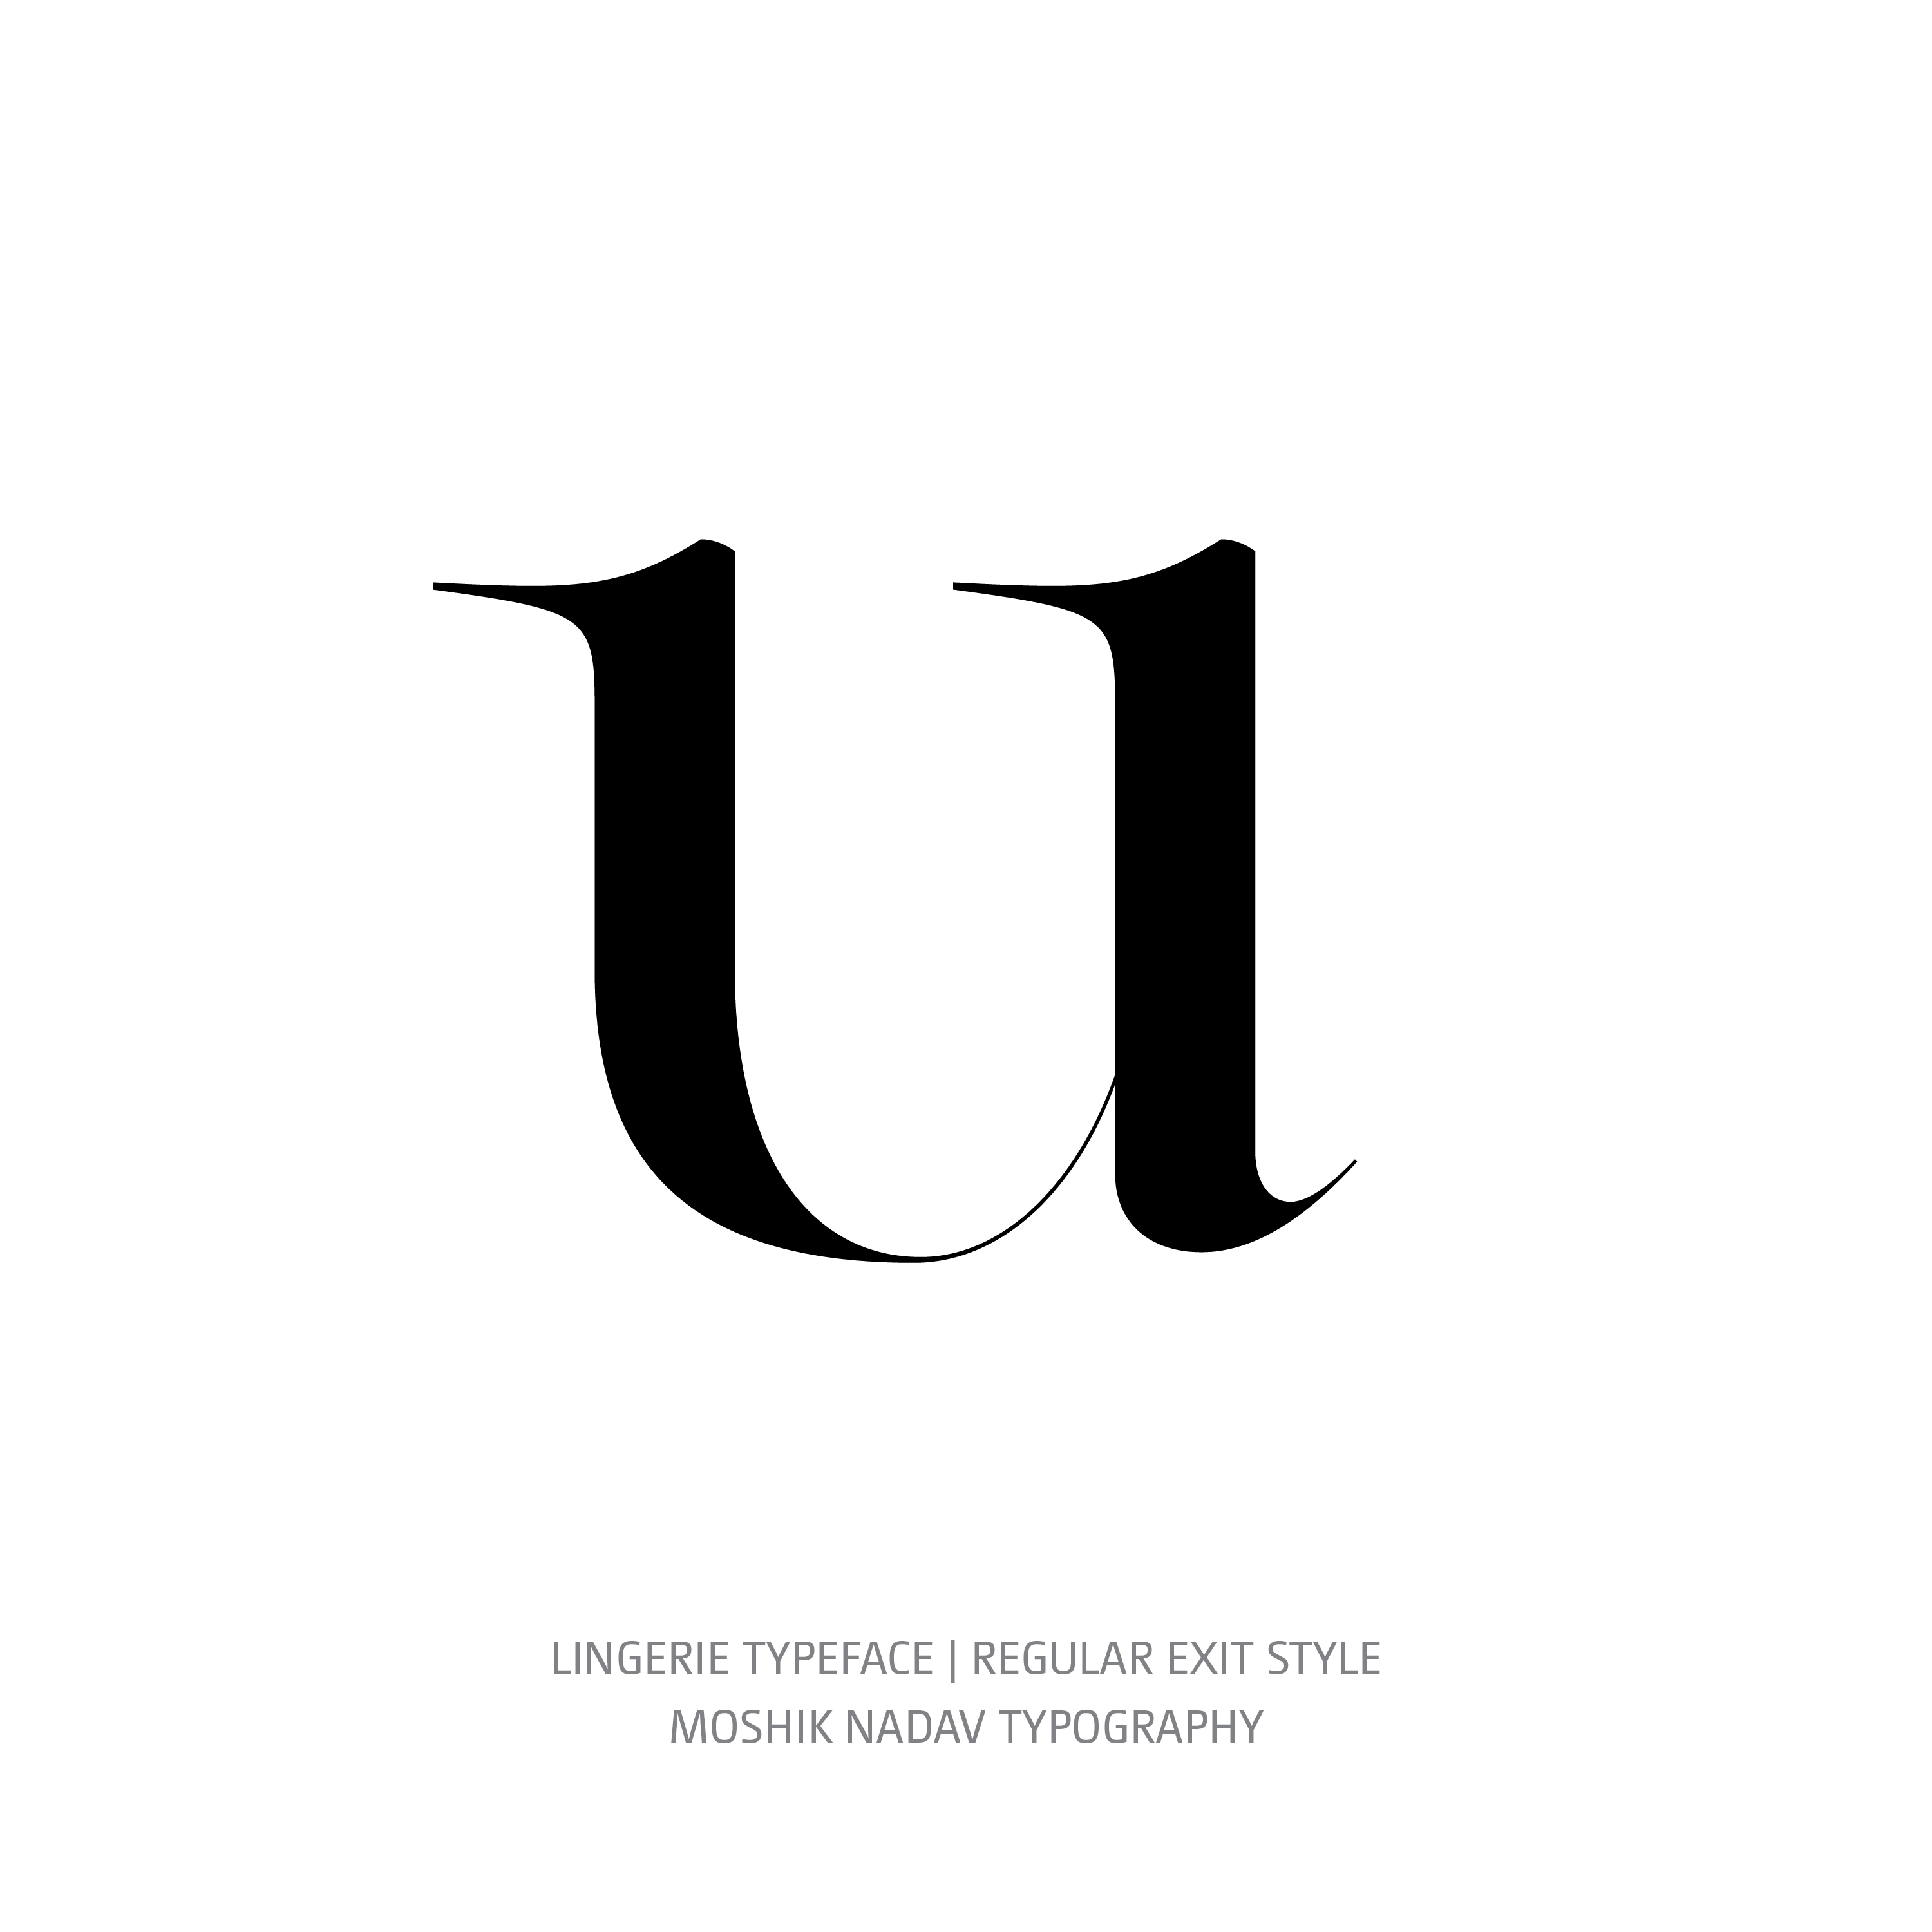 Lingerie Typeface Regular Exit u